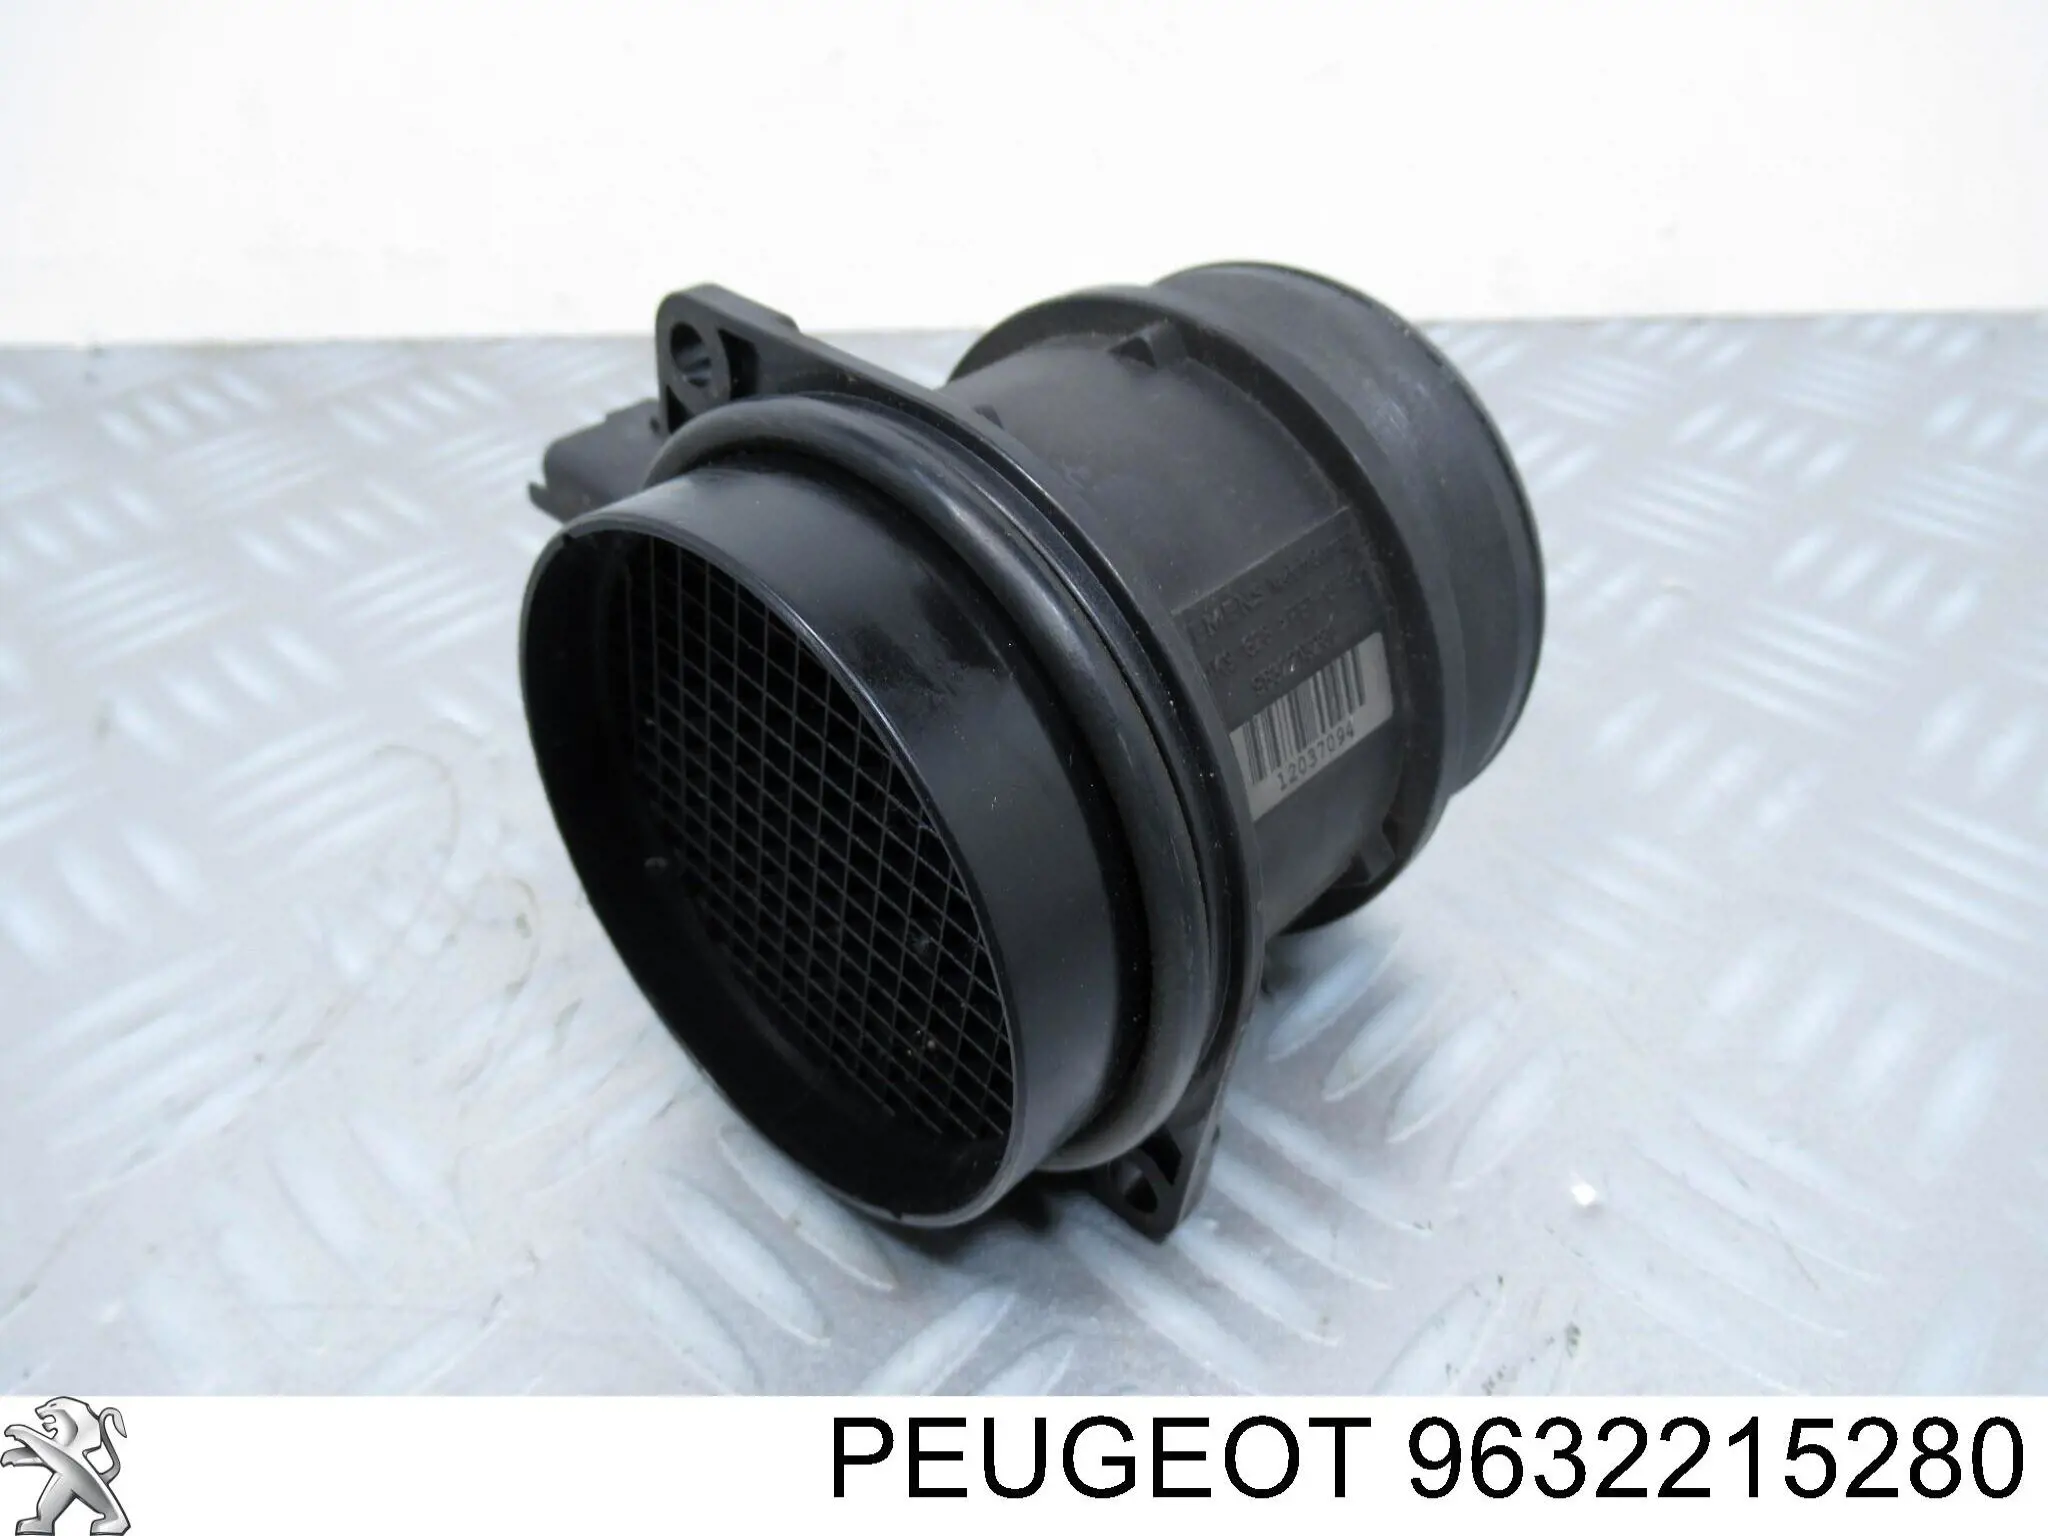 9632215280 Peugeot/Citroen sensor de fluxo (consumo de ar, medidor de consumo M.A.F. - (Mass Airflow))